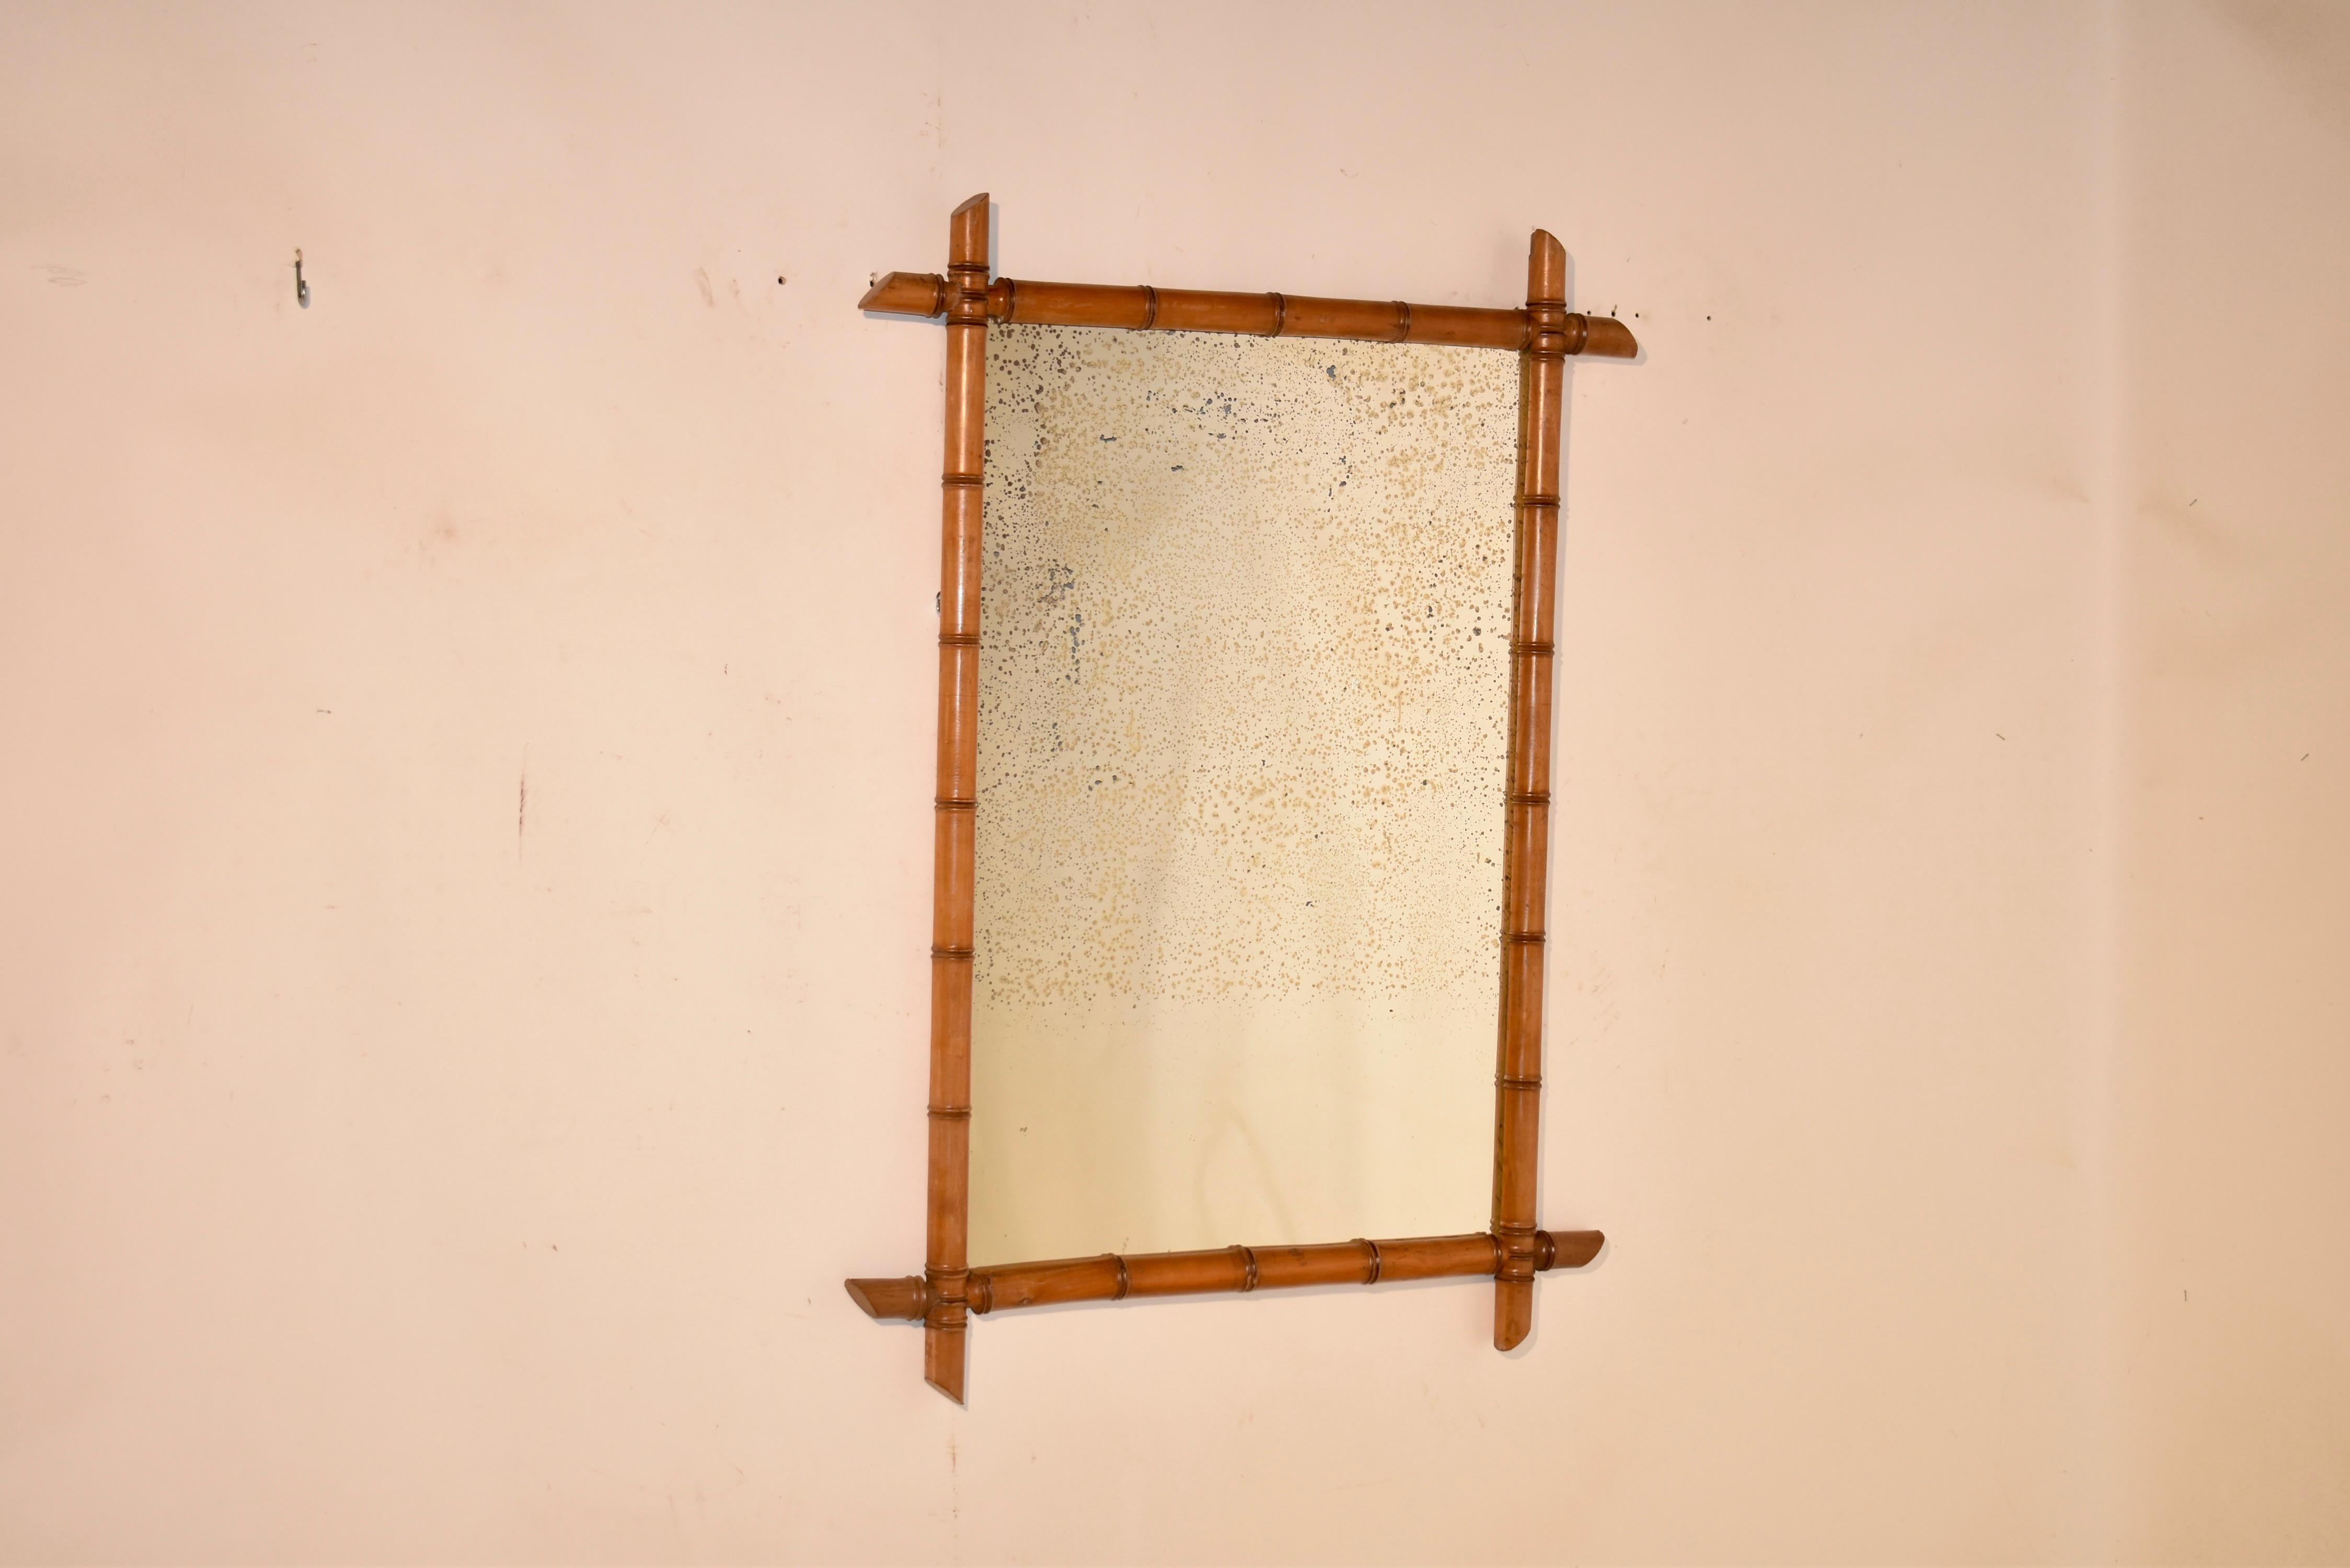 Spiegel aus Bambusimitat aus dem 19. Jahrhundert aus Frankreich.  Der Rahmen ist aus Kirsche gedrechselt und sieht aus wie Bambus.  Der Rahmen umgibt einen scheinbar originalen Quecksilberglasspiegel.  Diese Spiegel sind wunderbar geeignet, um jedem